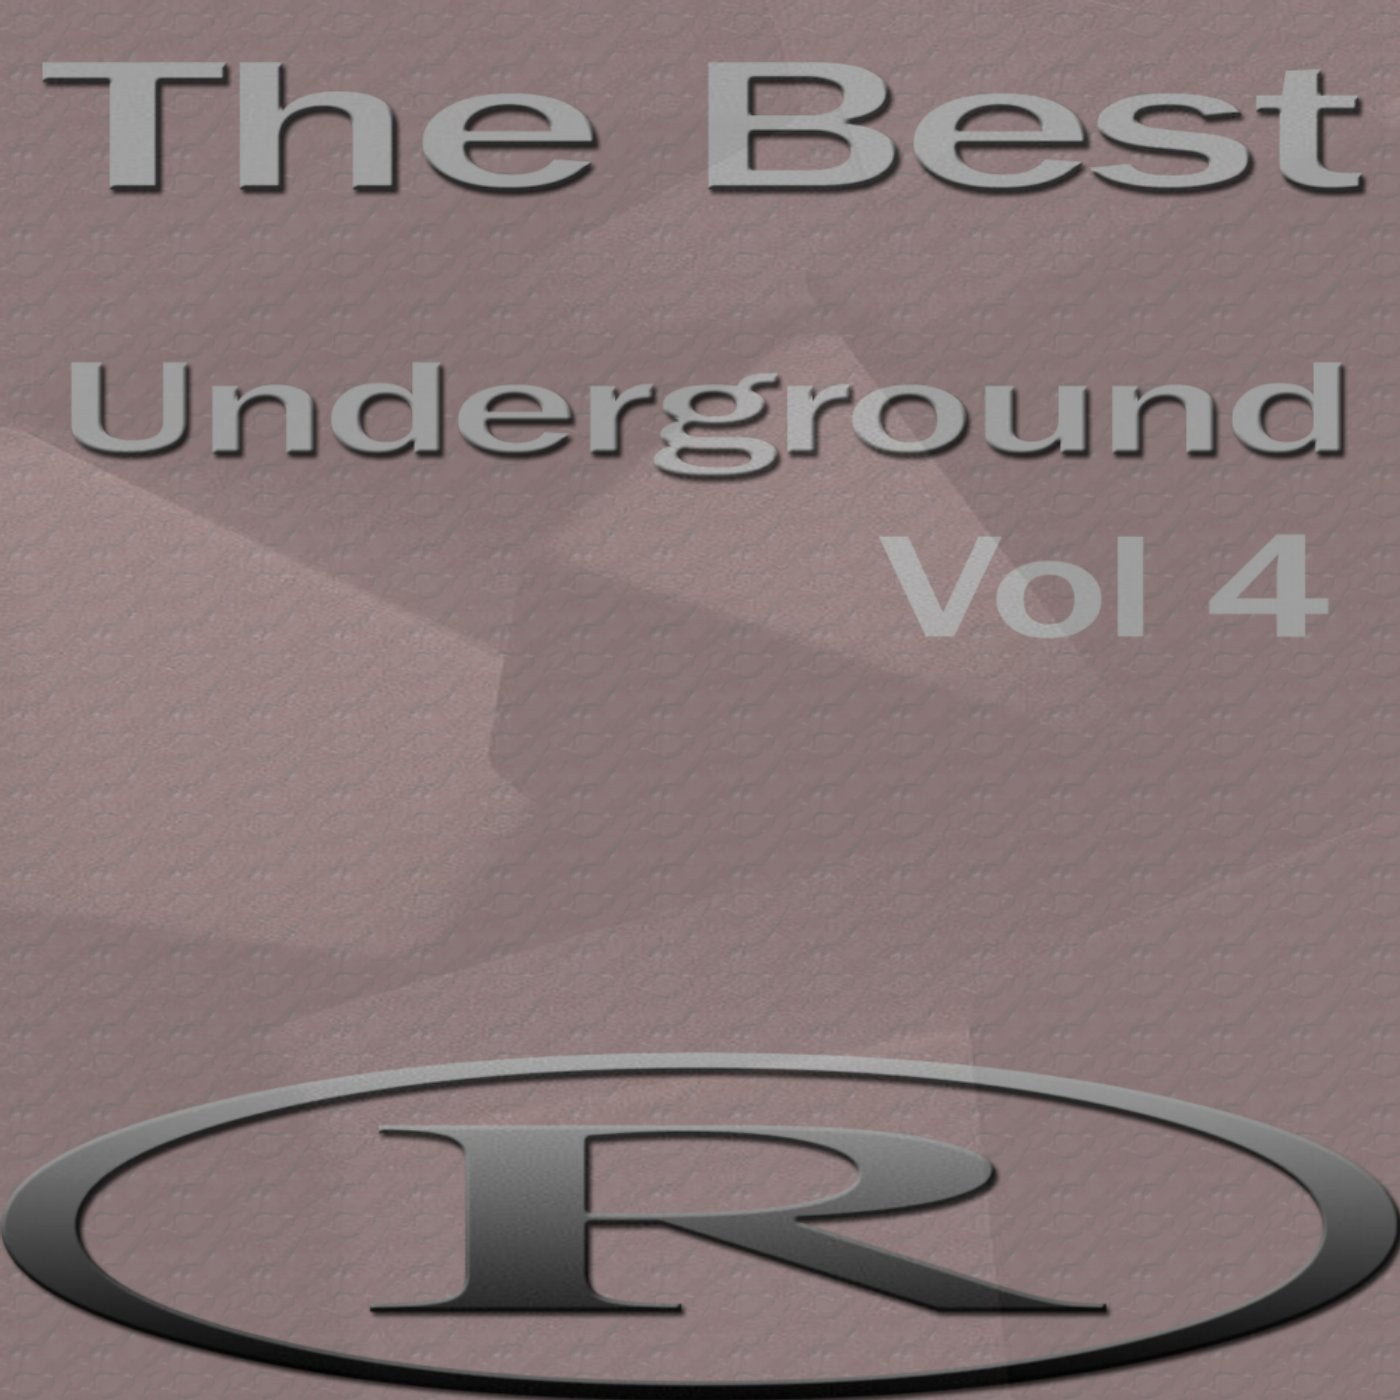 The Best Underground, Vol.4